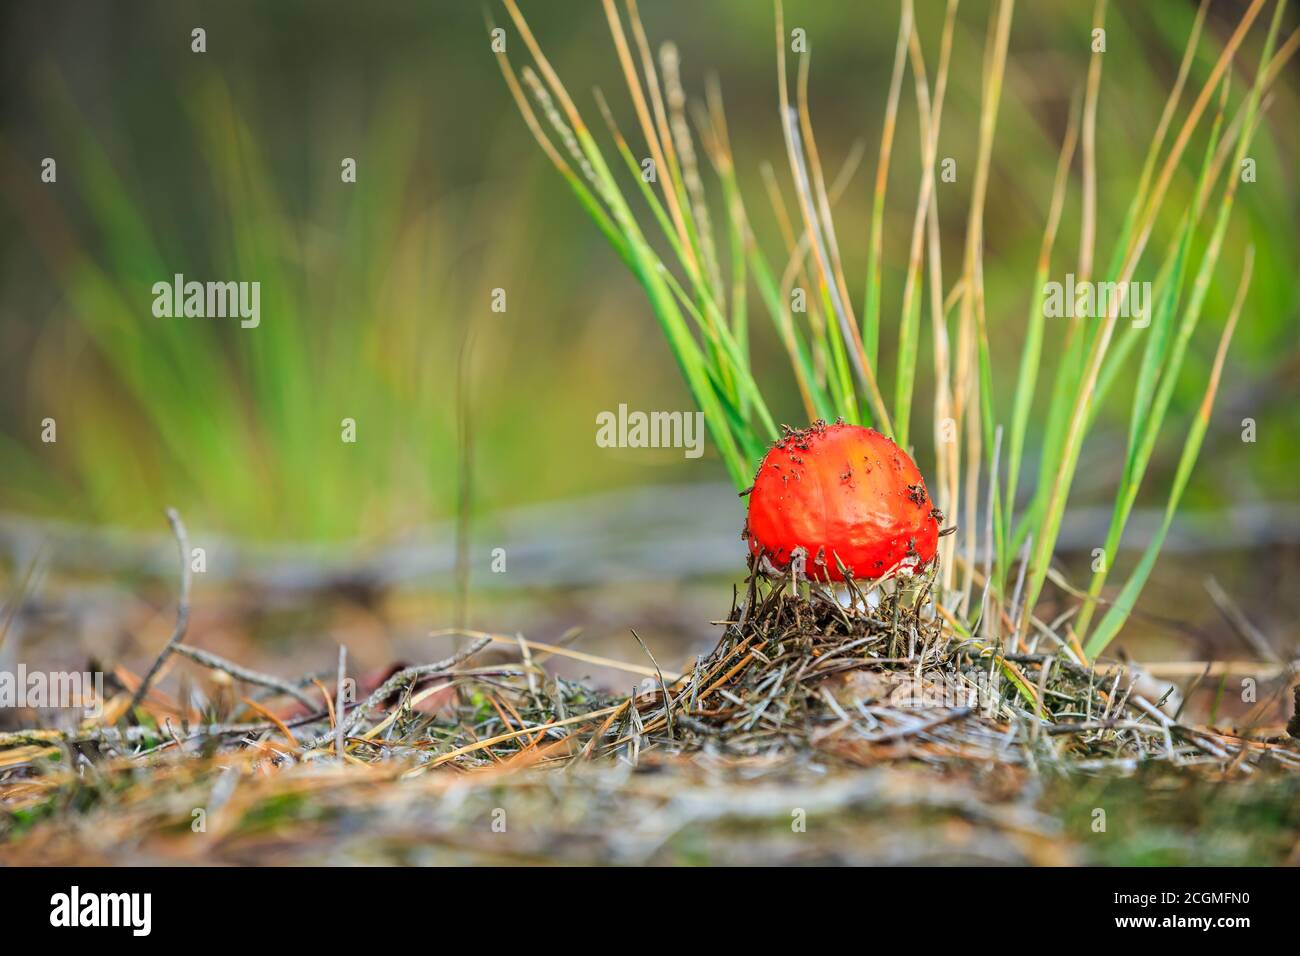 Traumhafte Nahaufnahme einer Aganita muscaria, Fliege Agaric Fly Amanita basidiomycota muscimol Pilz mit typischen weißen Flecken auf einem roten Hut in einem Wald. Entfällt Stockfoto